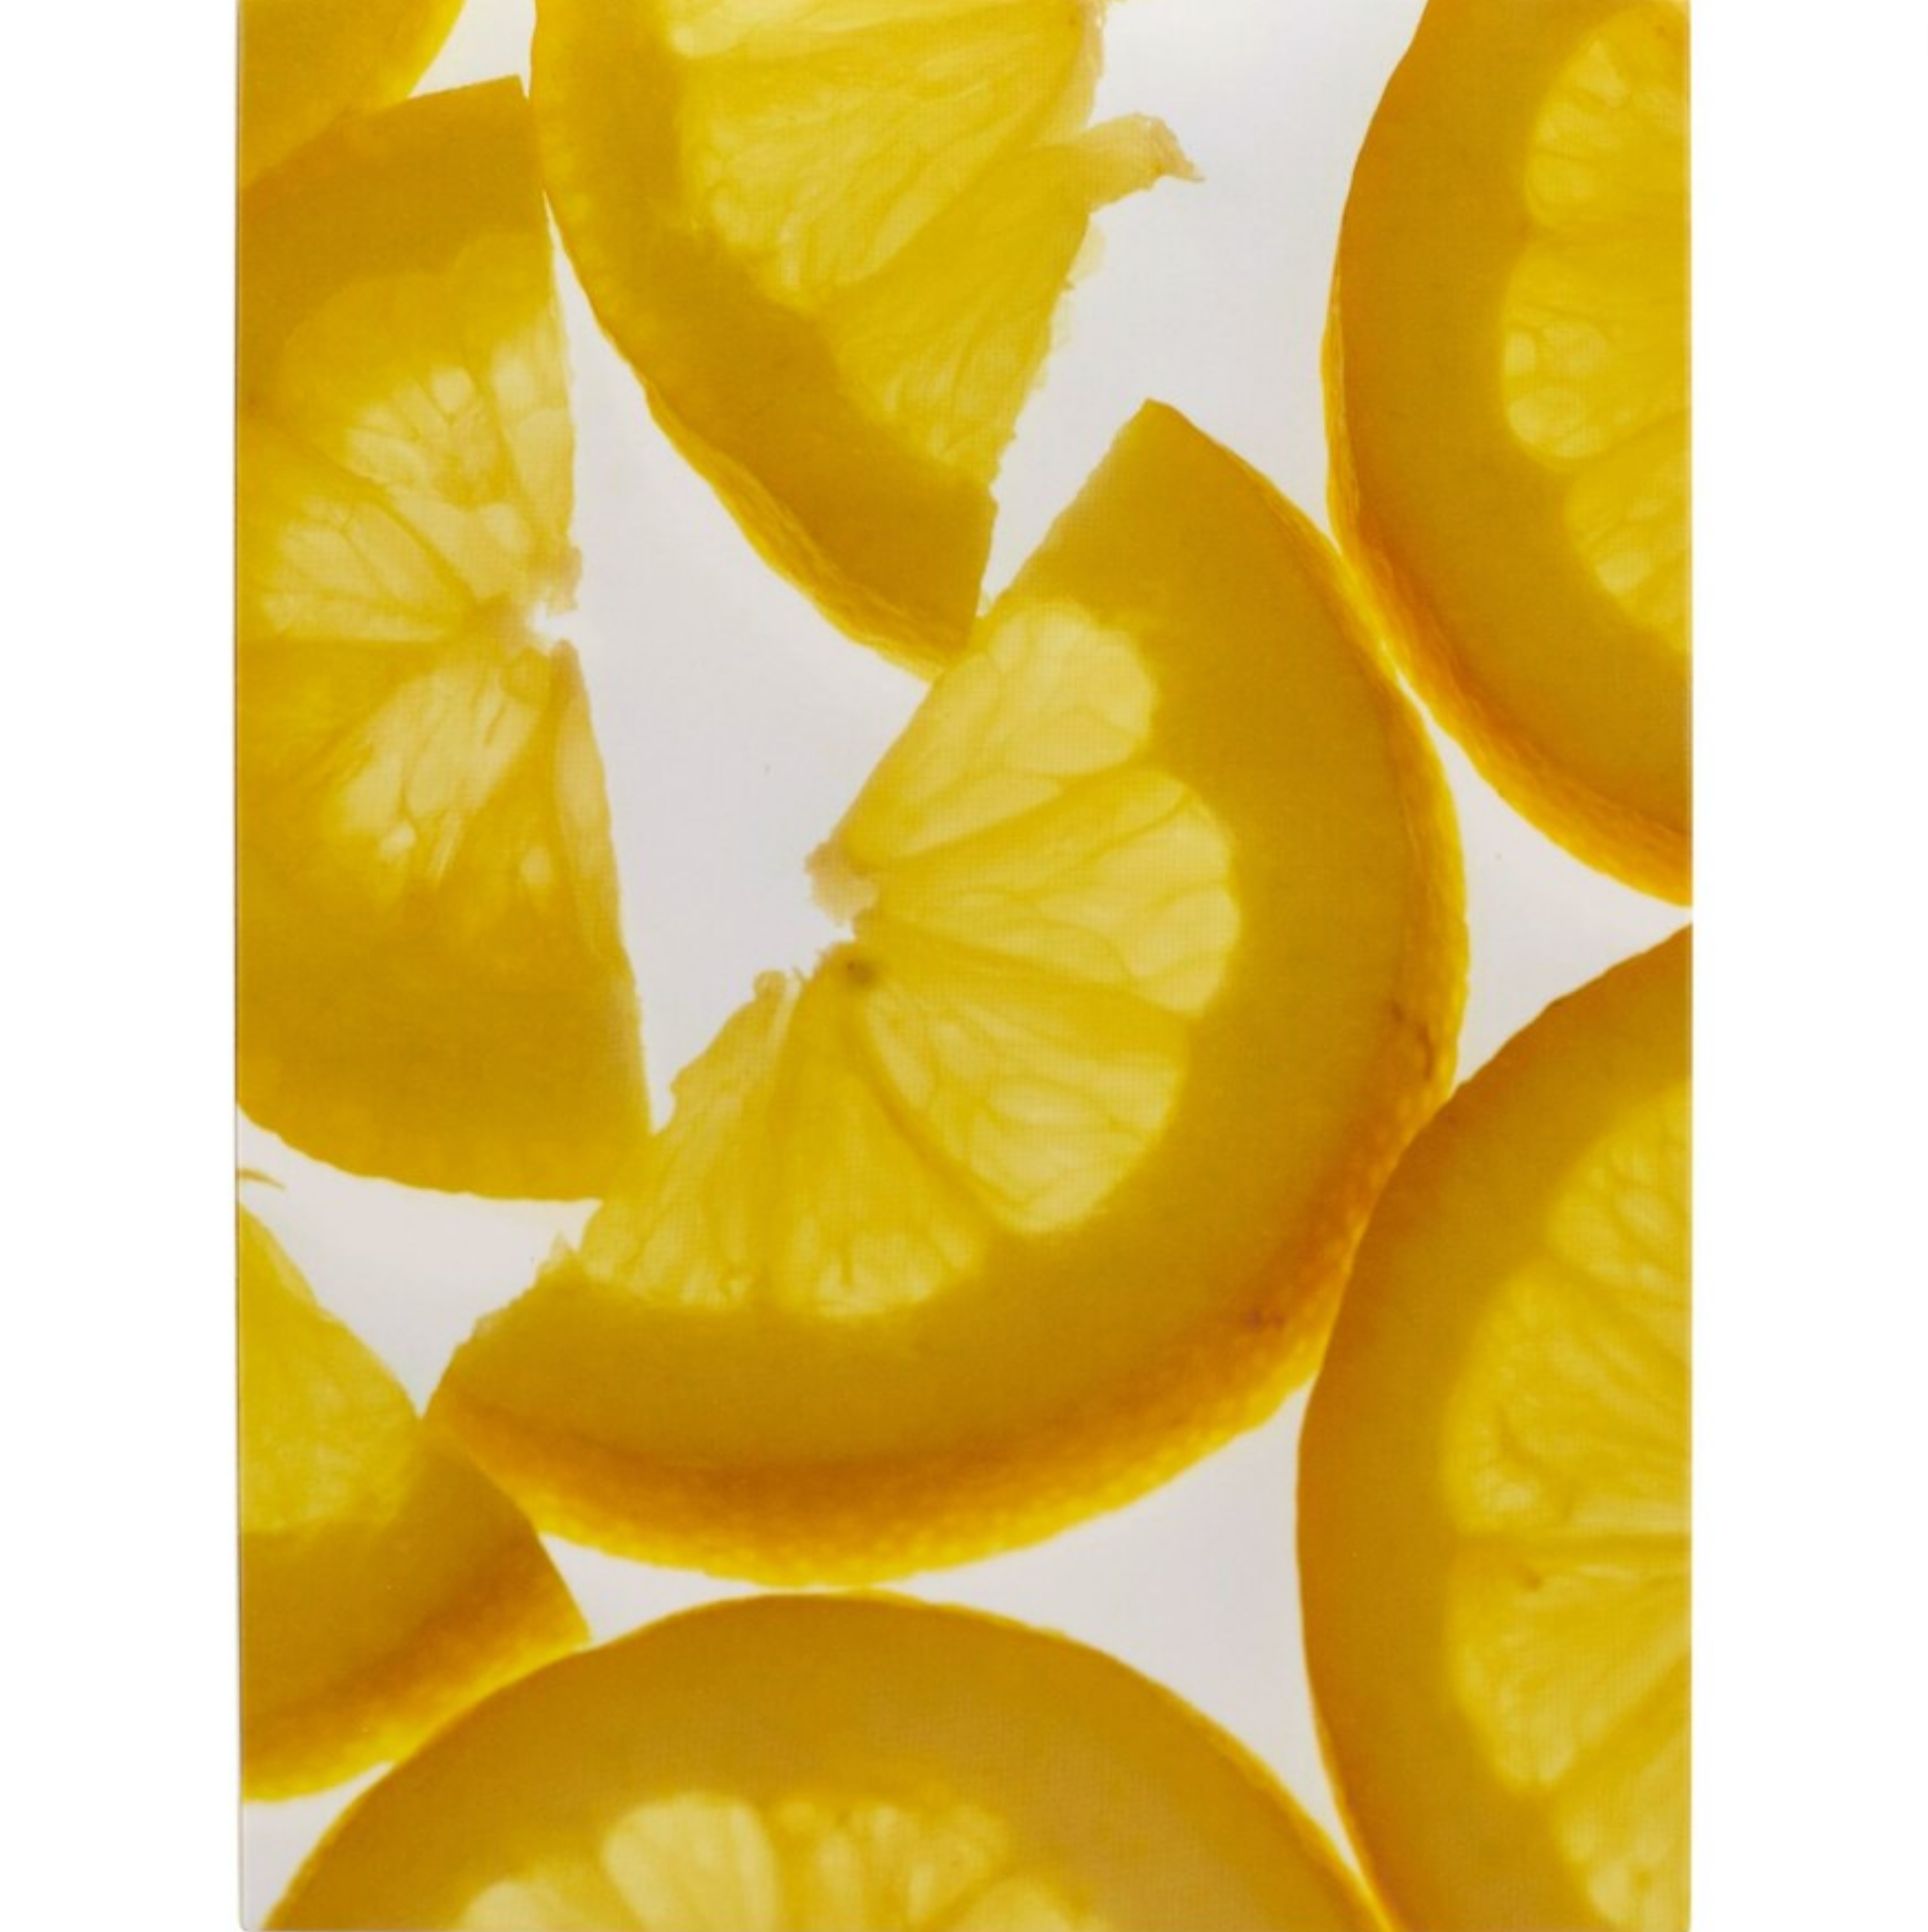 Oh K! Vitamin C Trio, lemon slices